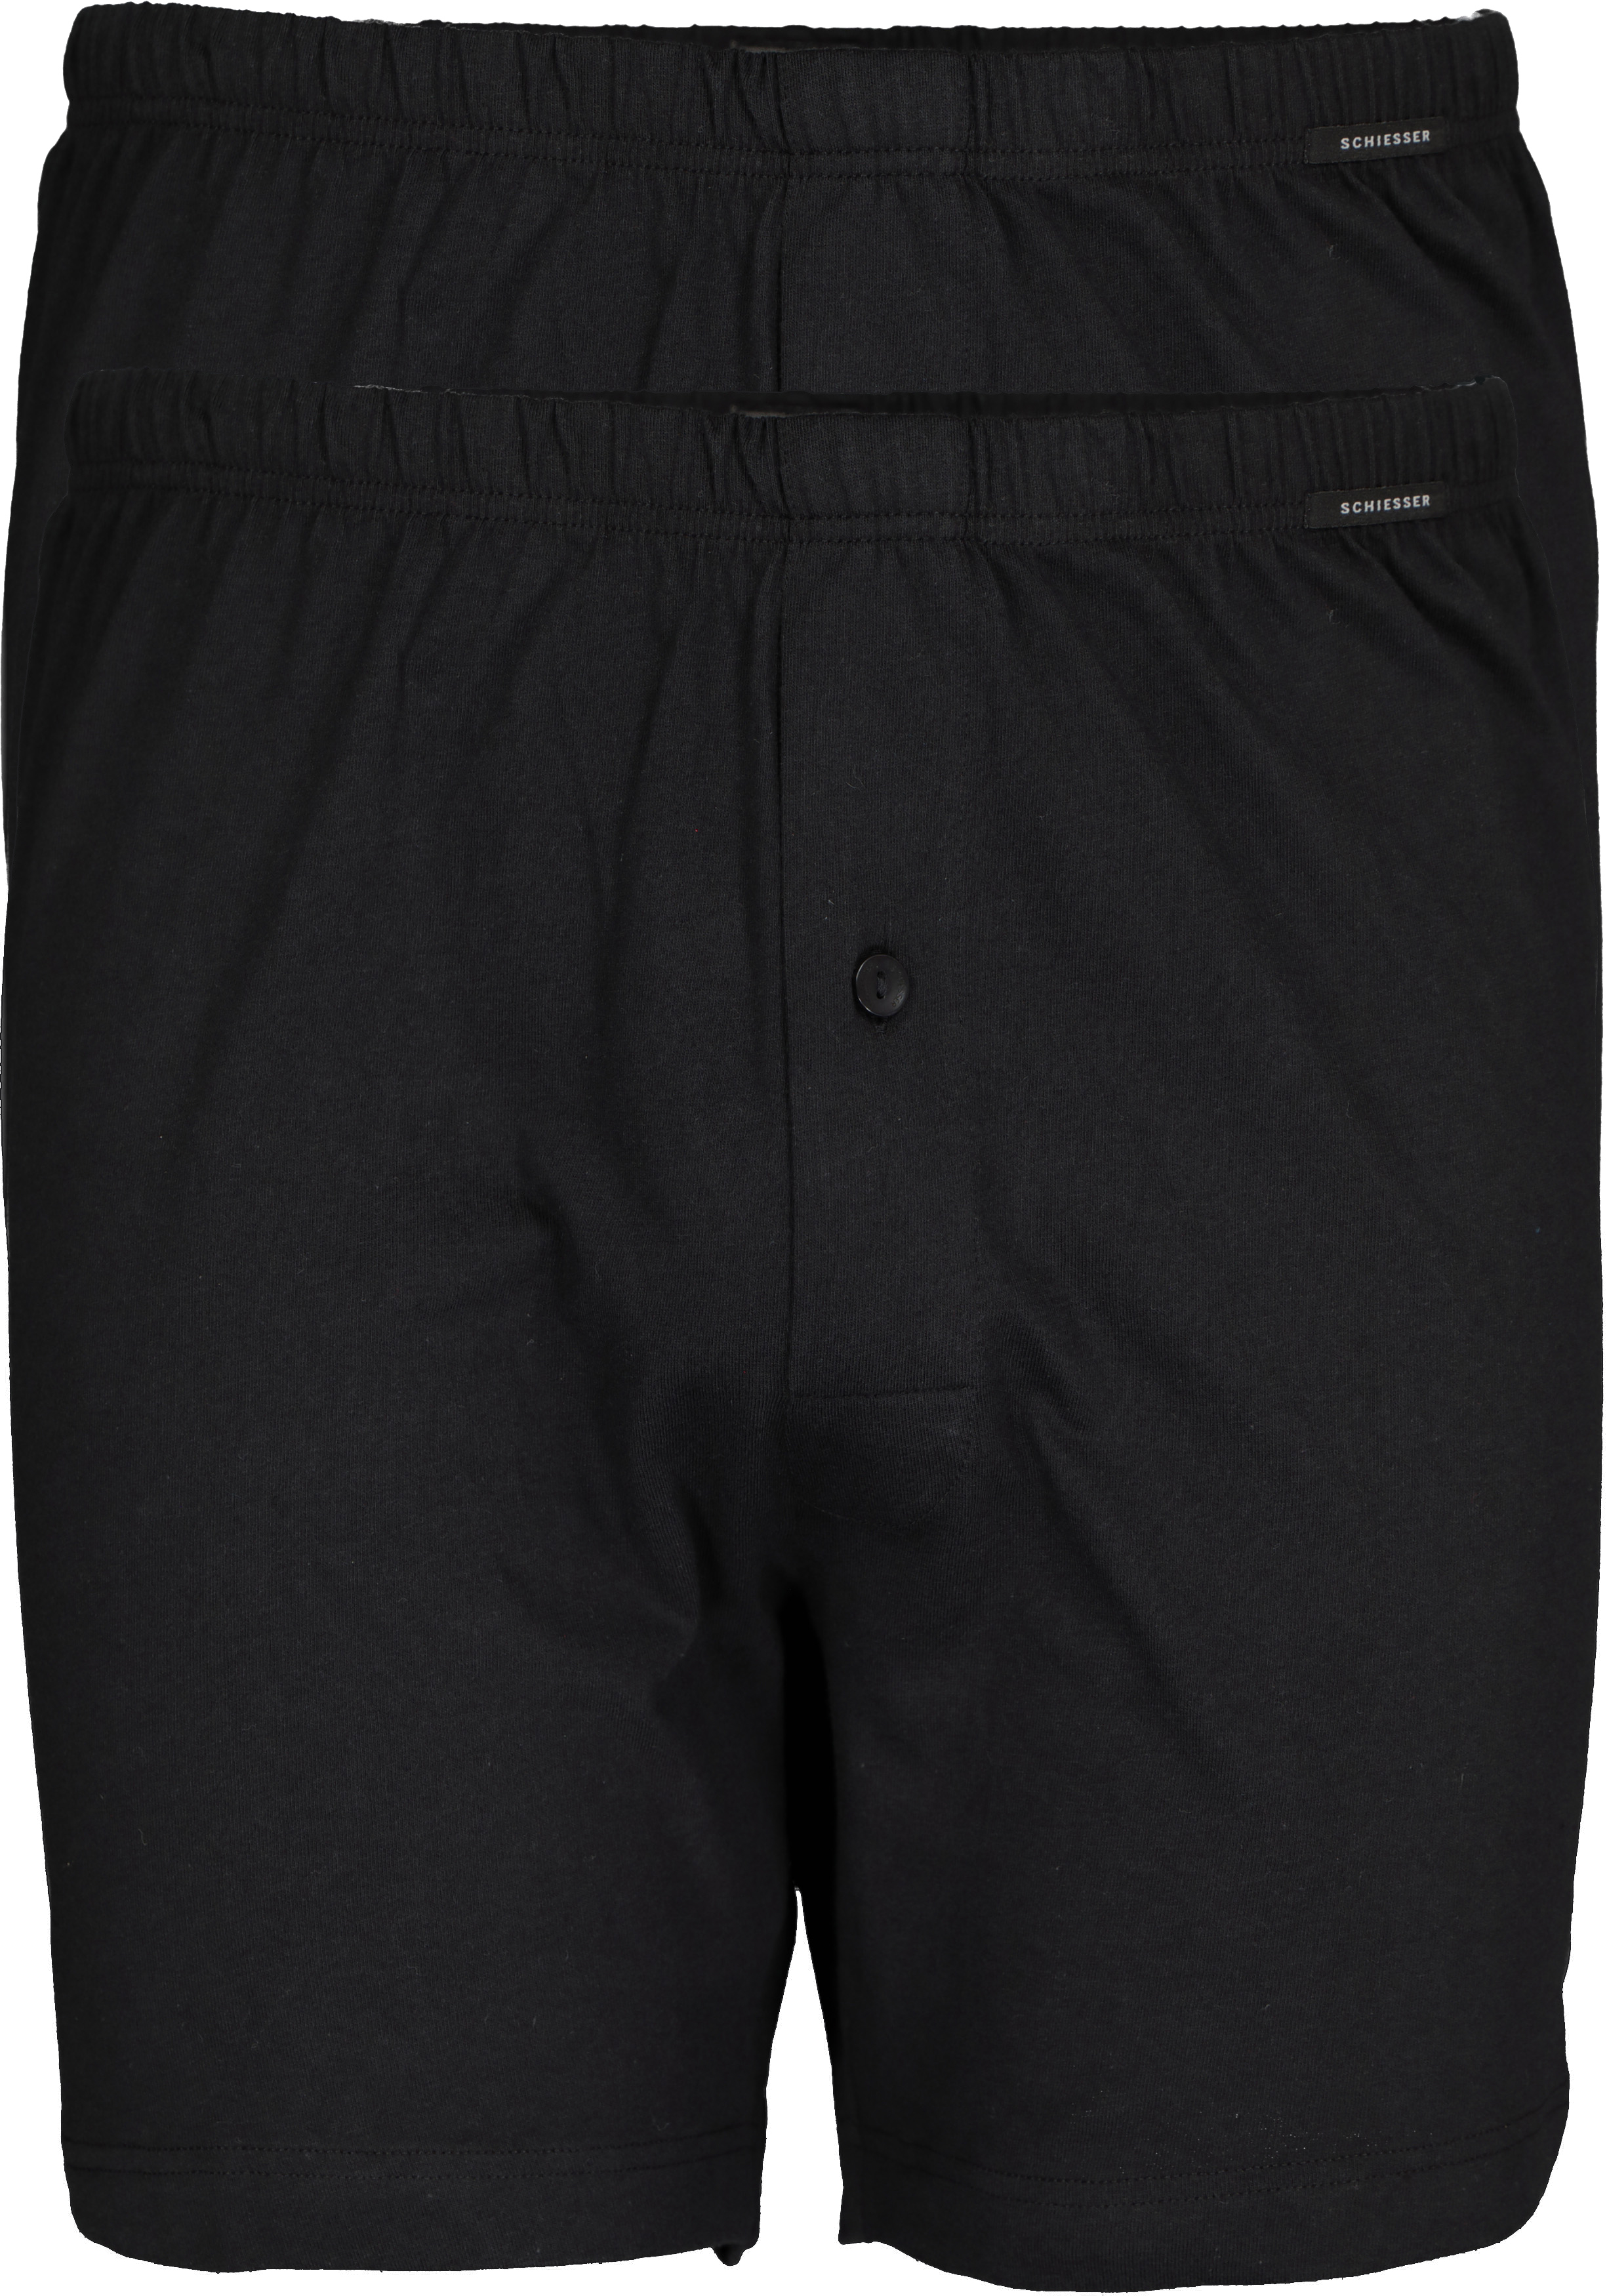 SCHIESSER Cotton Essentials boxershorts wijd (2-pack), tricot, zwart